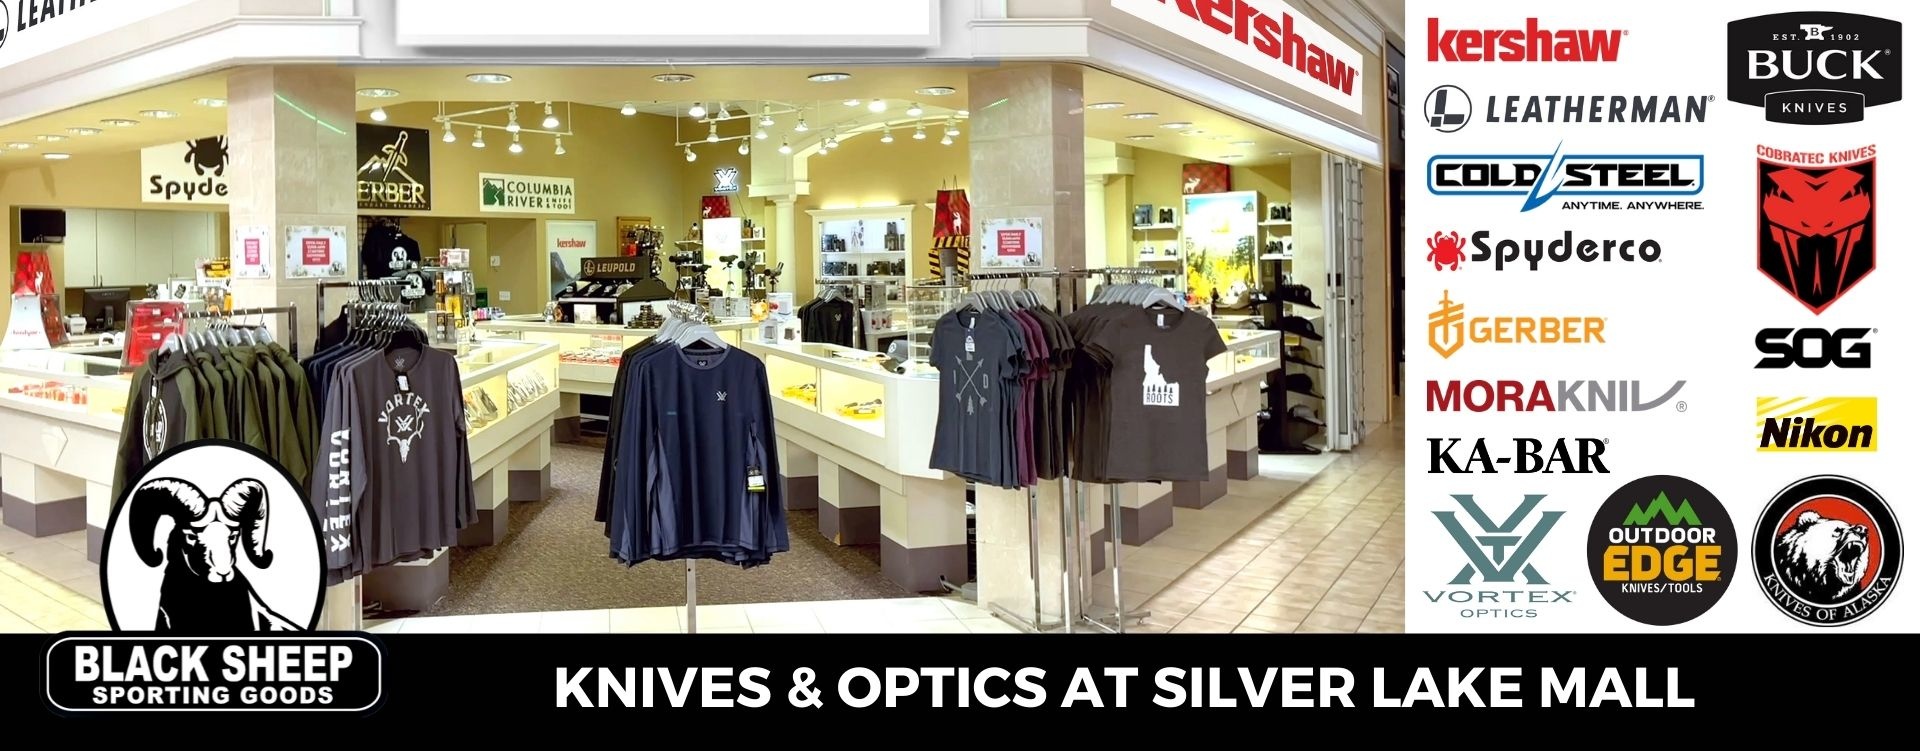 Black Sheep Knives & Optics at Silver Lake Mall